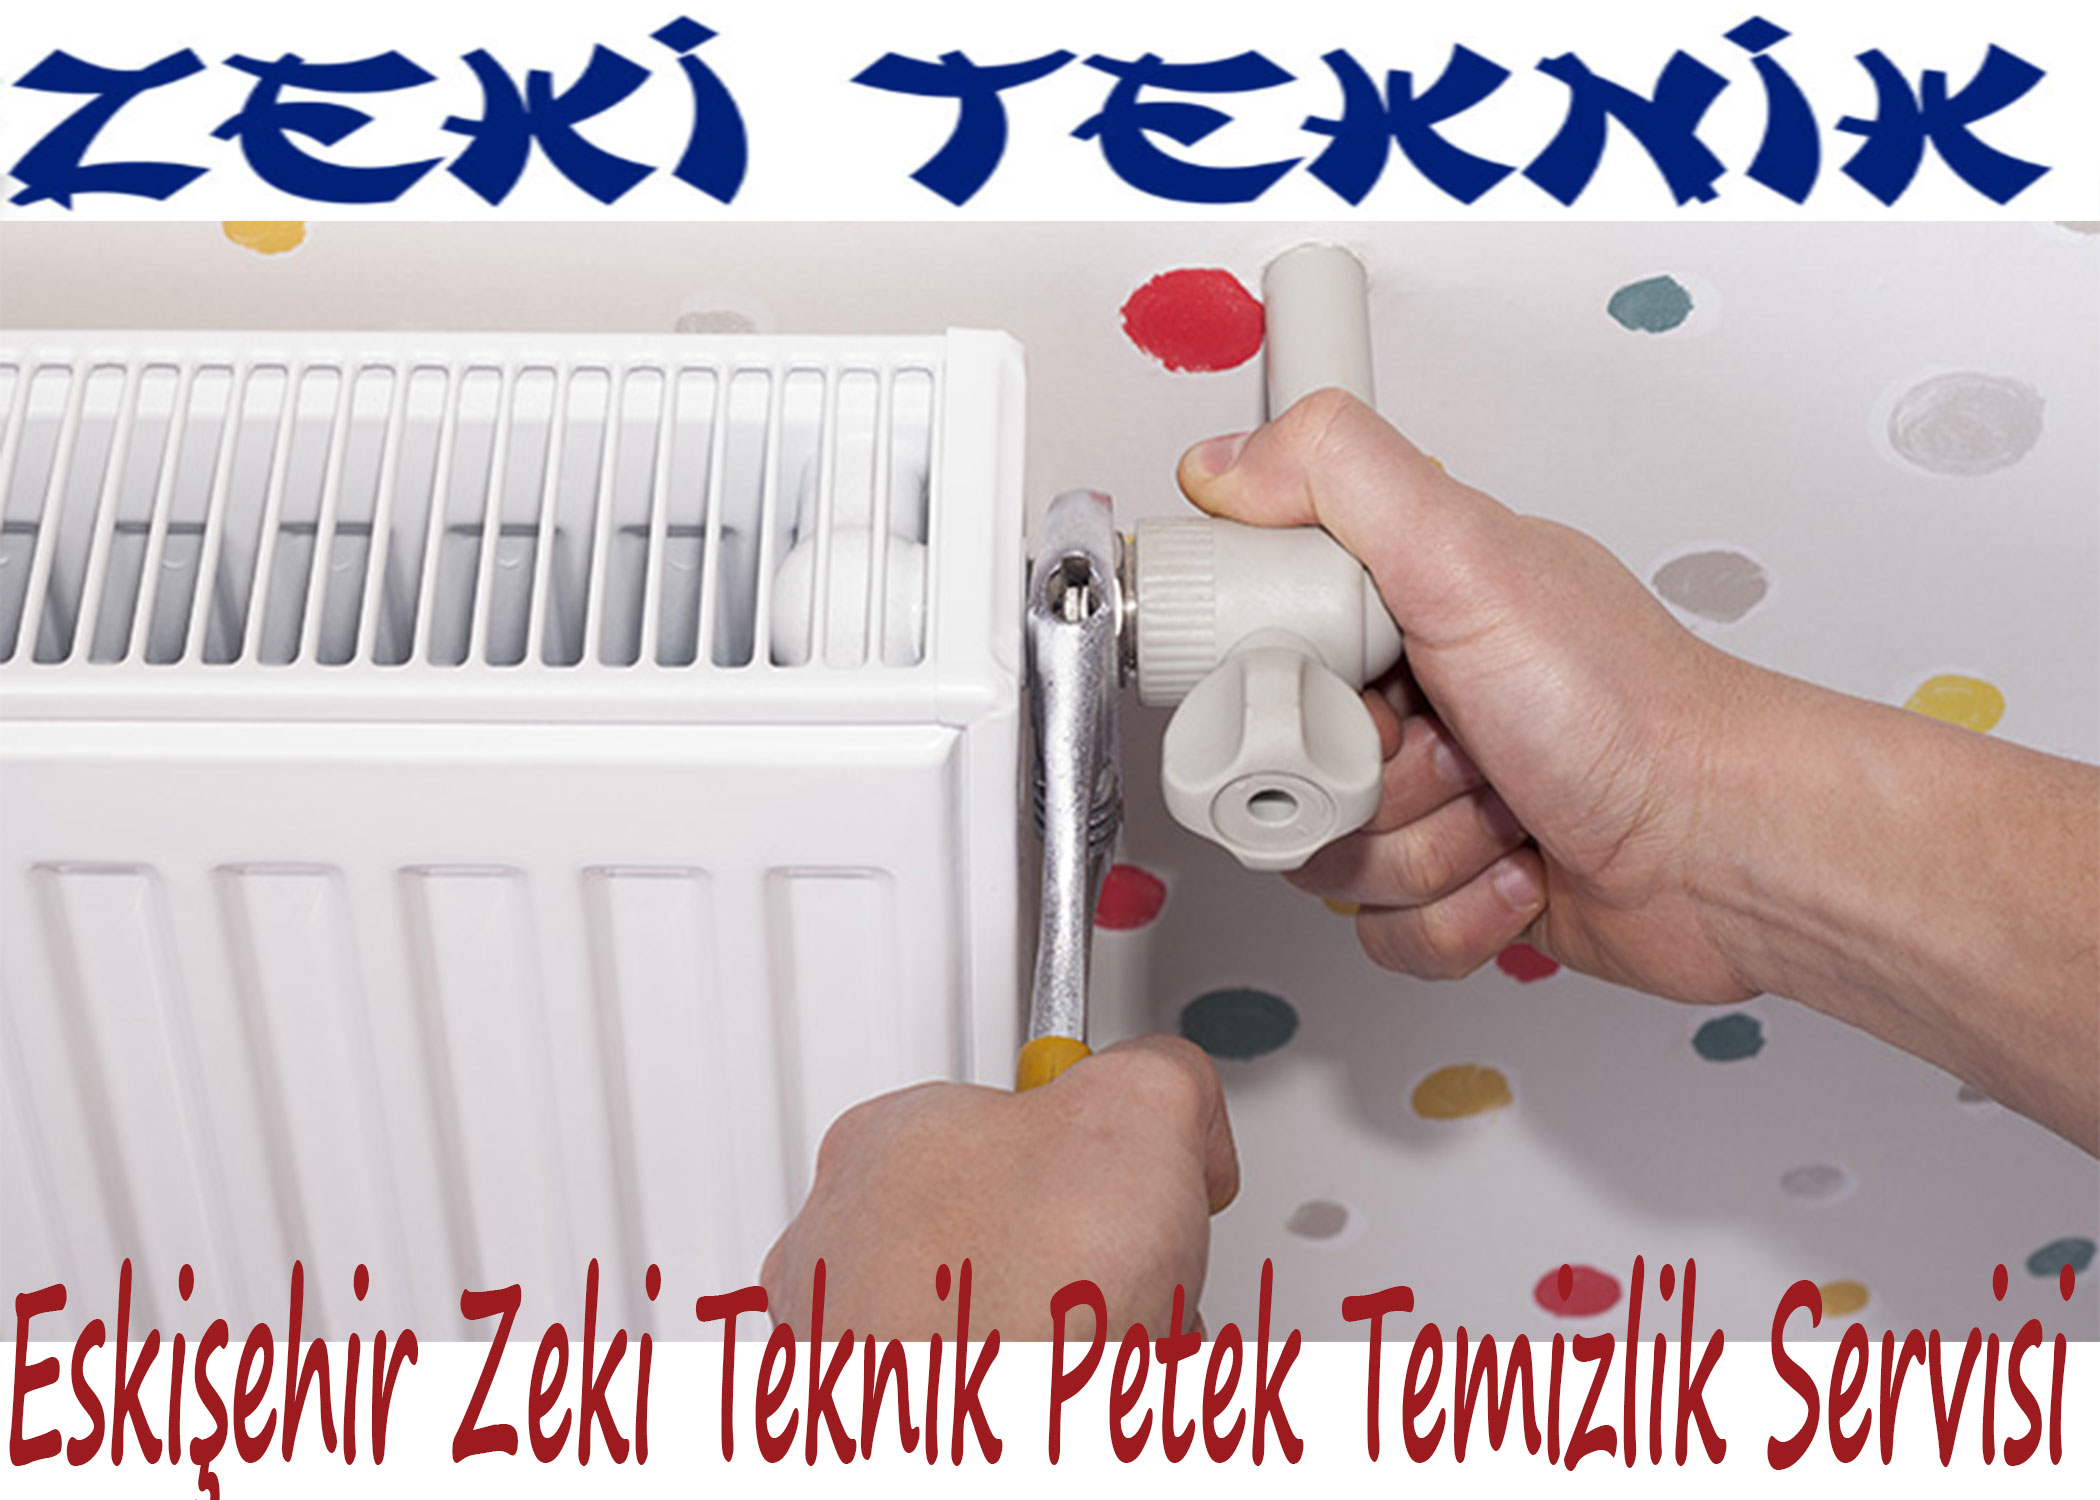 Petek Temizleme Firmalari Ankara 444 2 846 Zeki Teknik